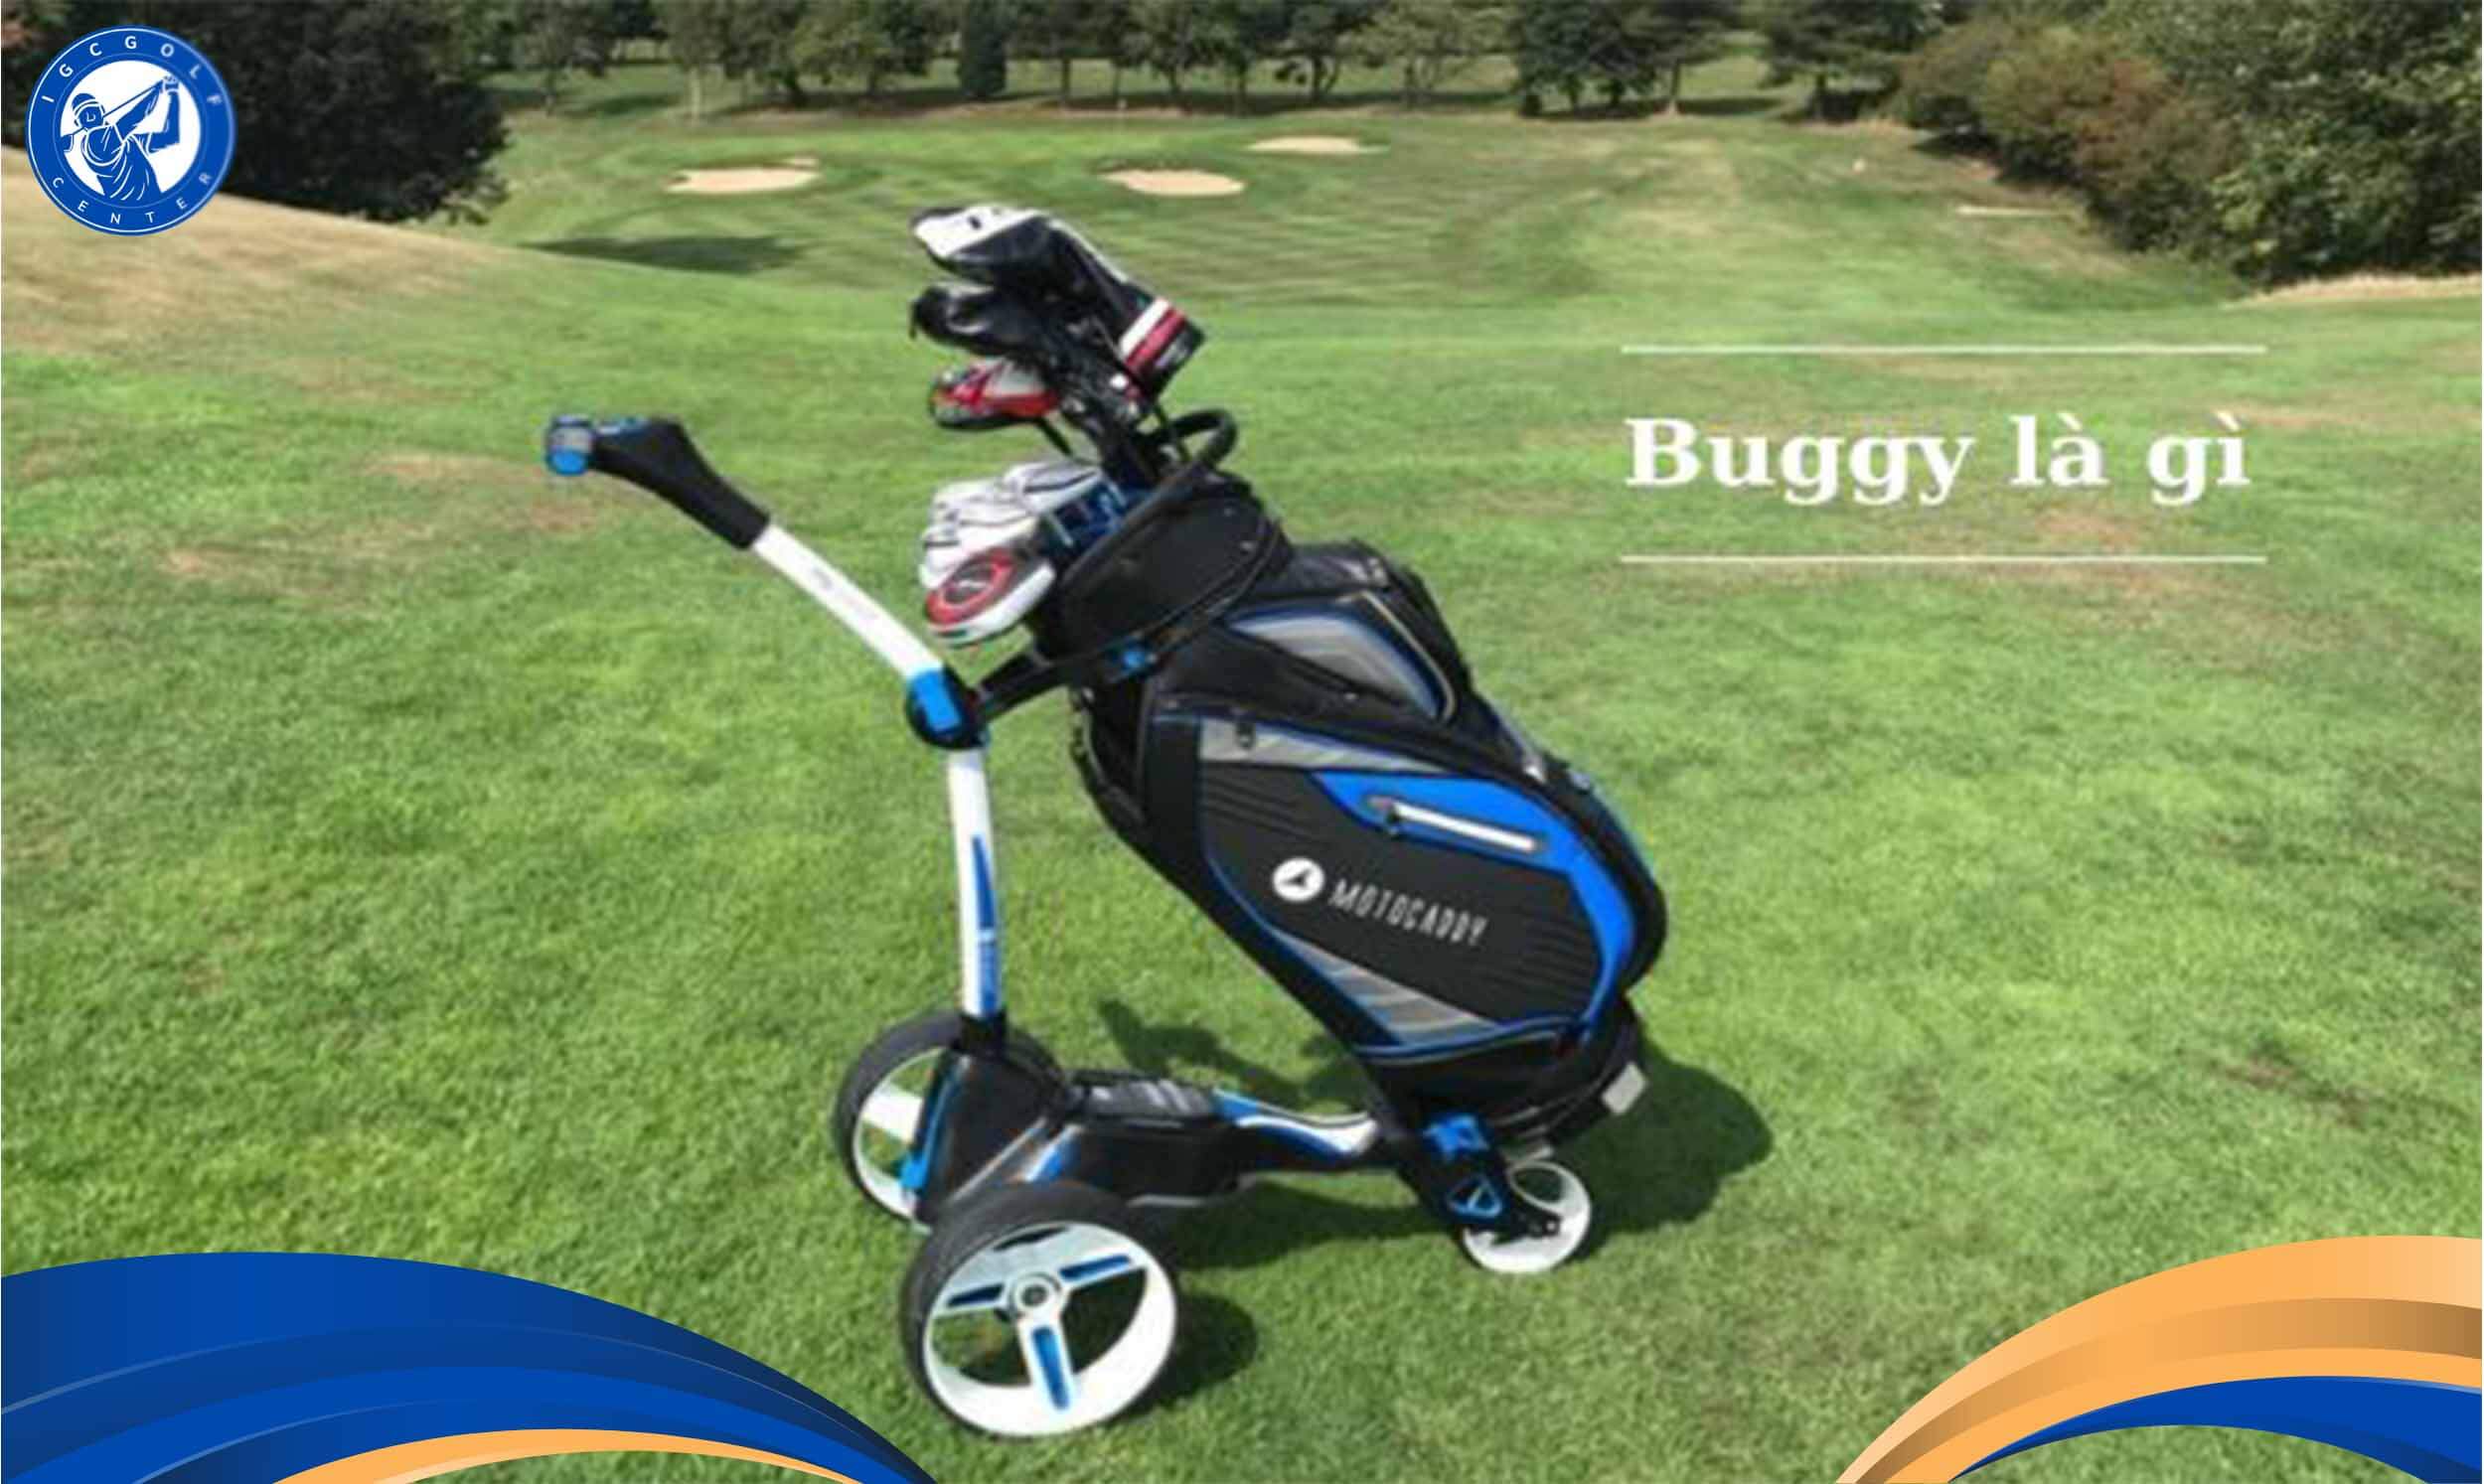 Buggy là gì trong golf